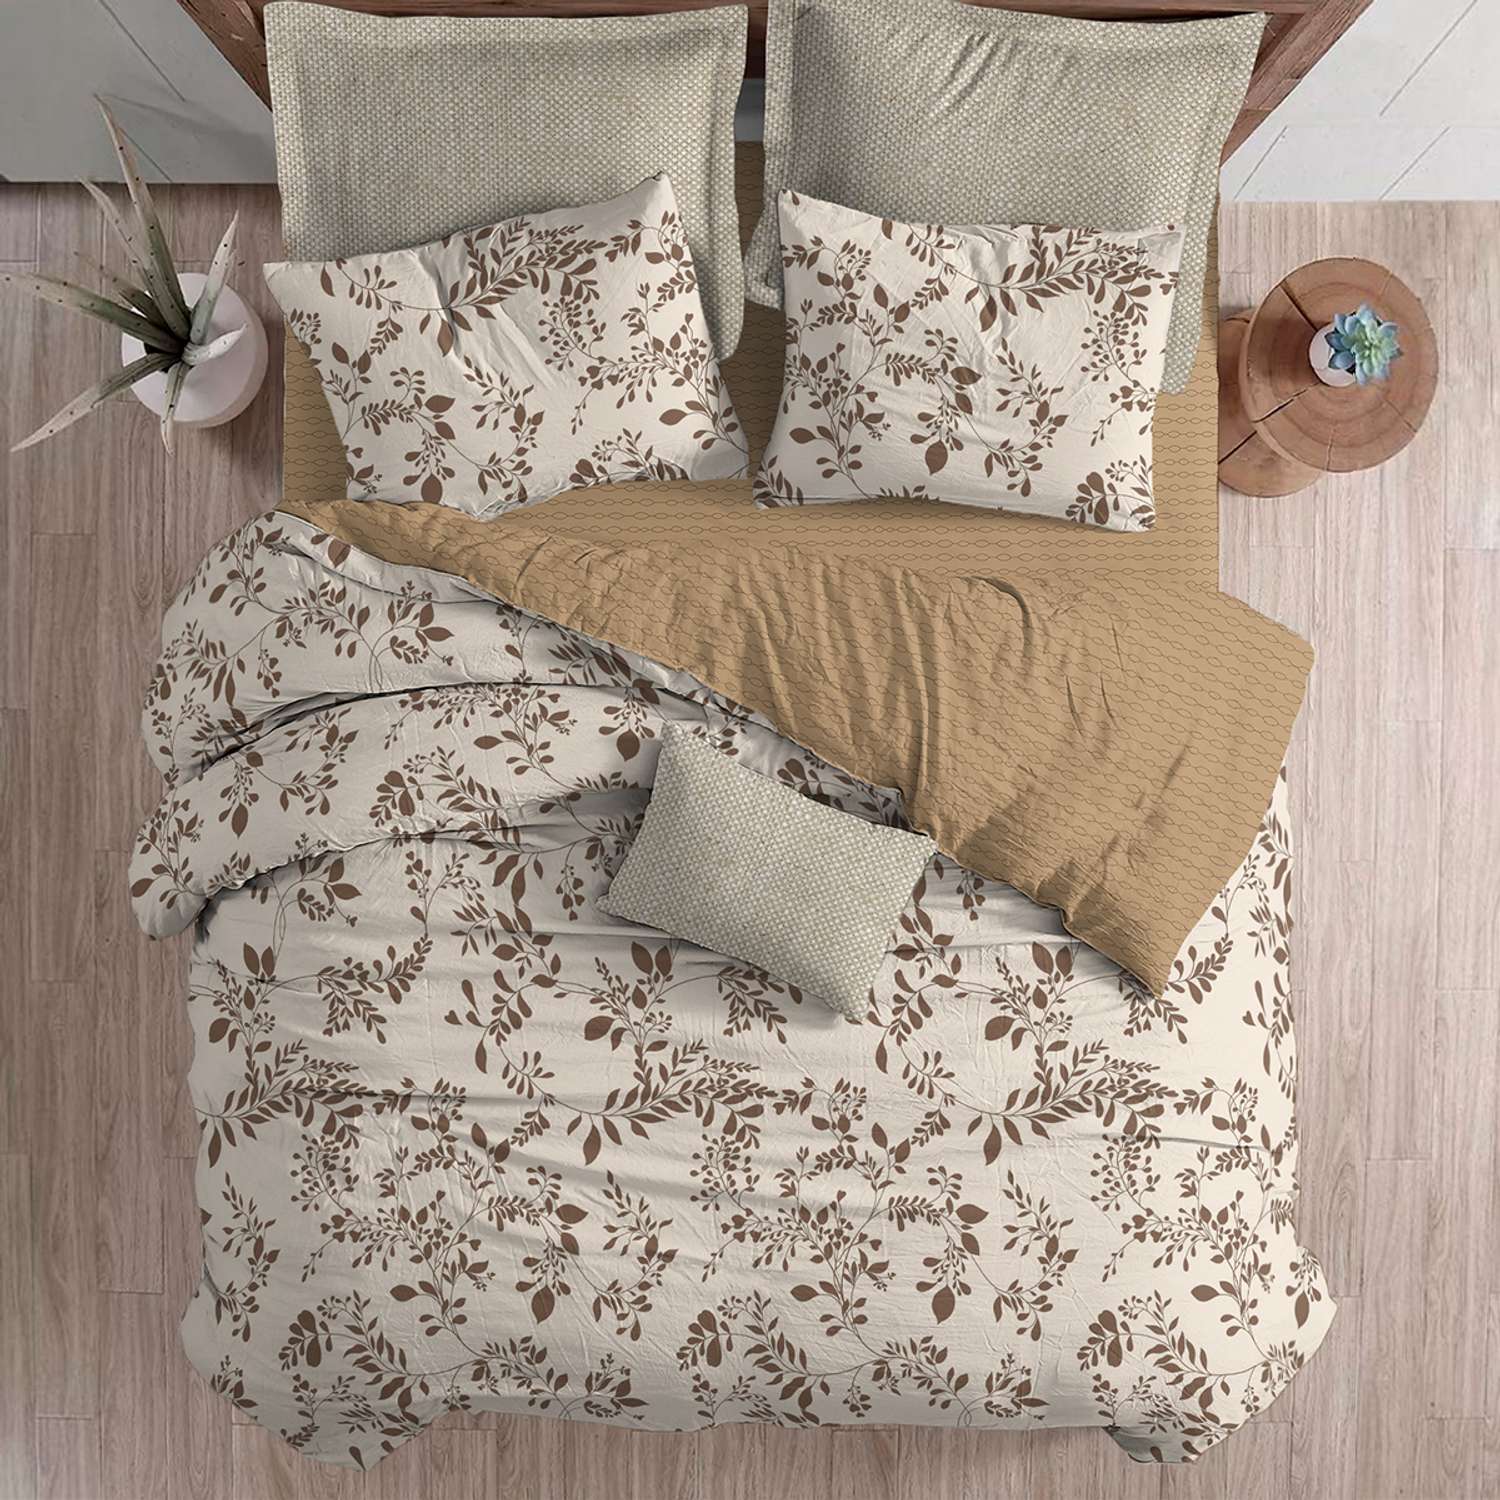 Комплект постельного белья lagom Лунд 1.5-спальный наволочки 70х70 - фото 9